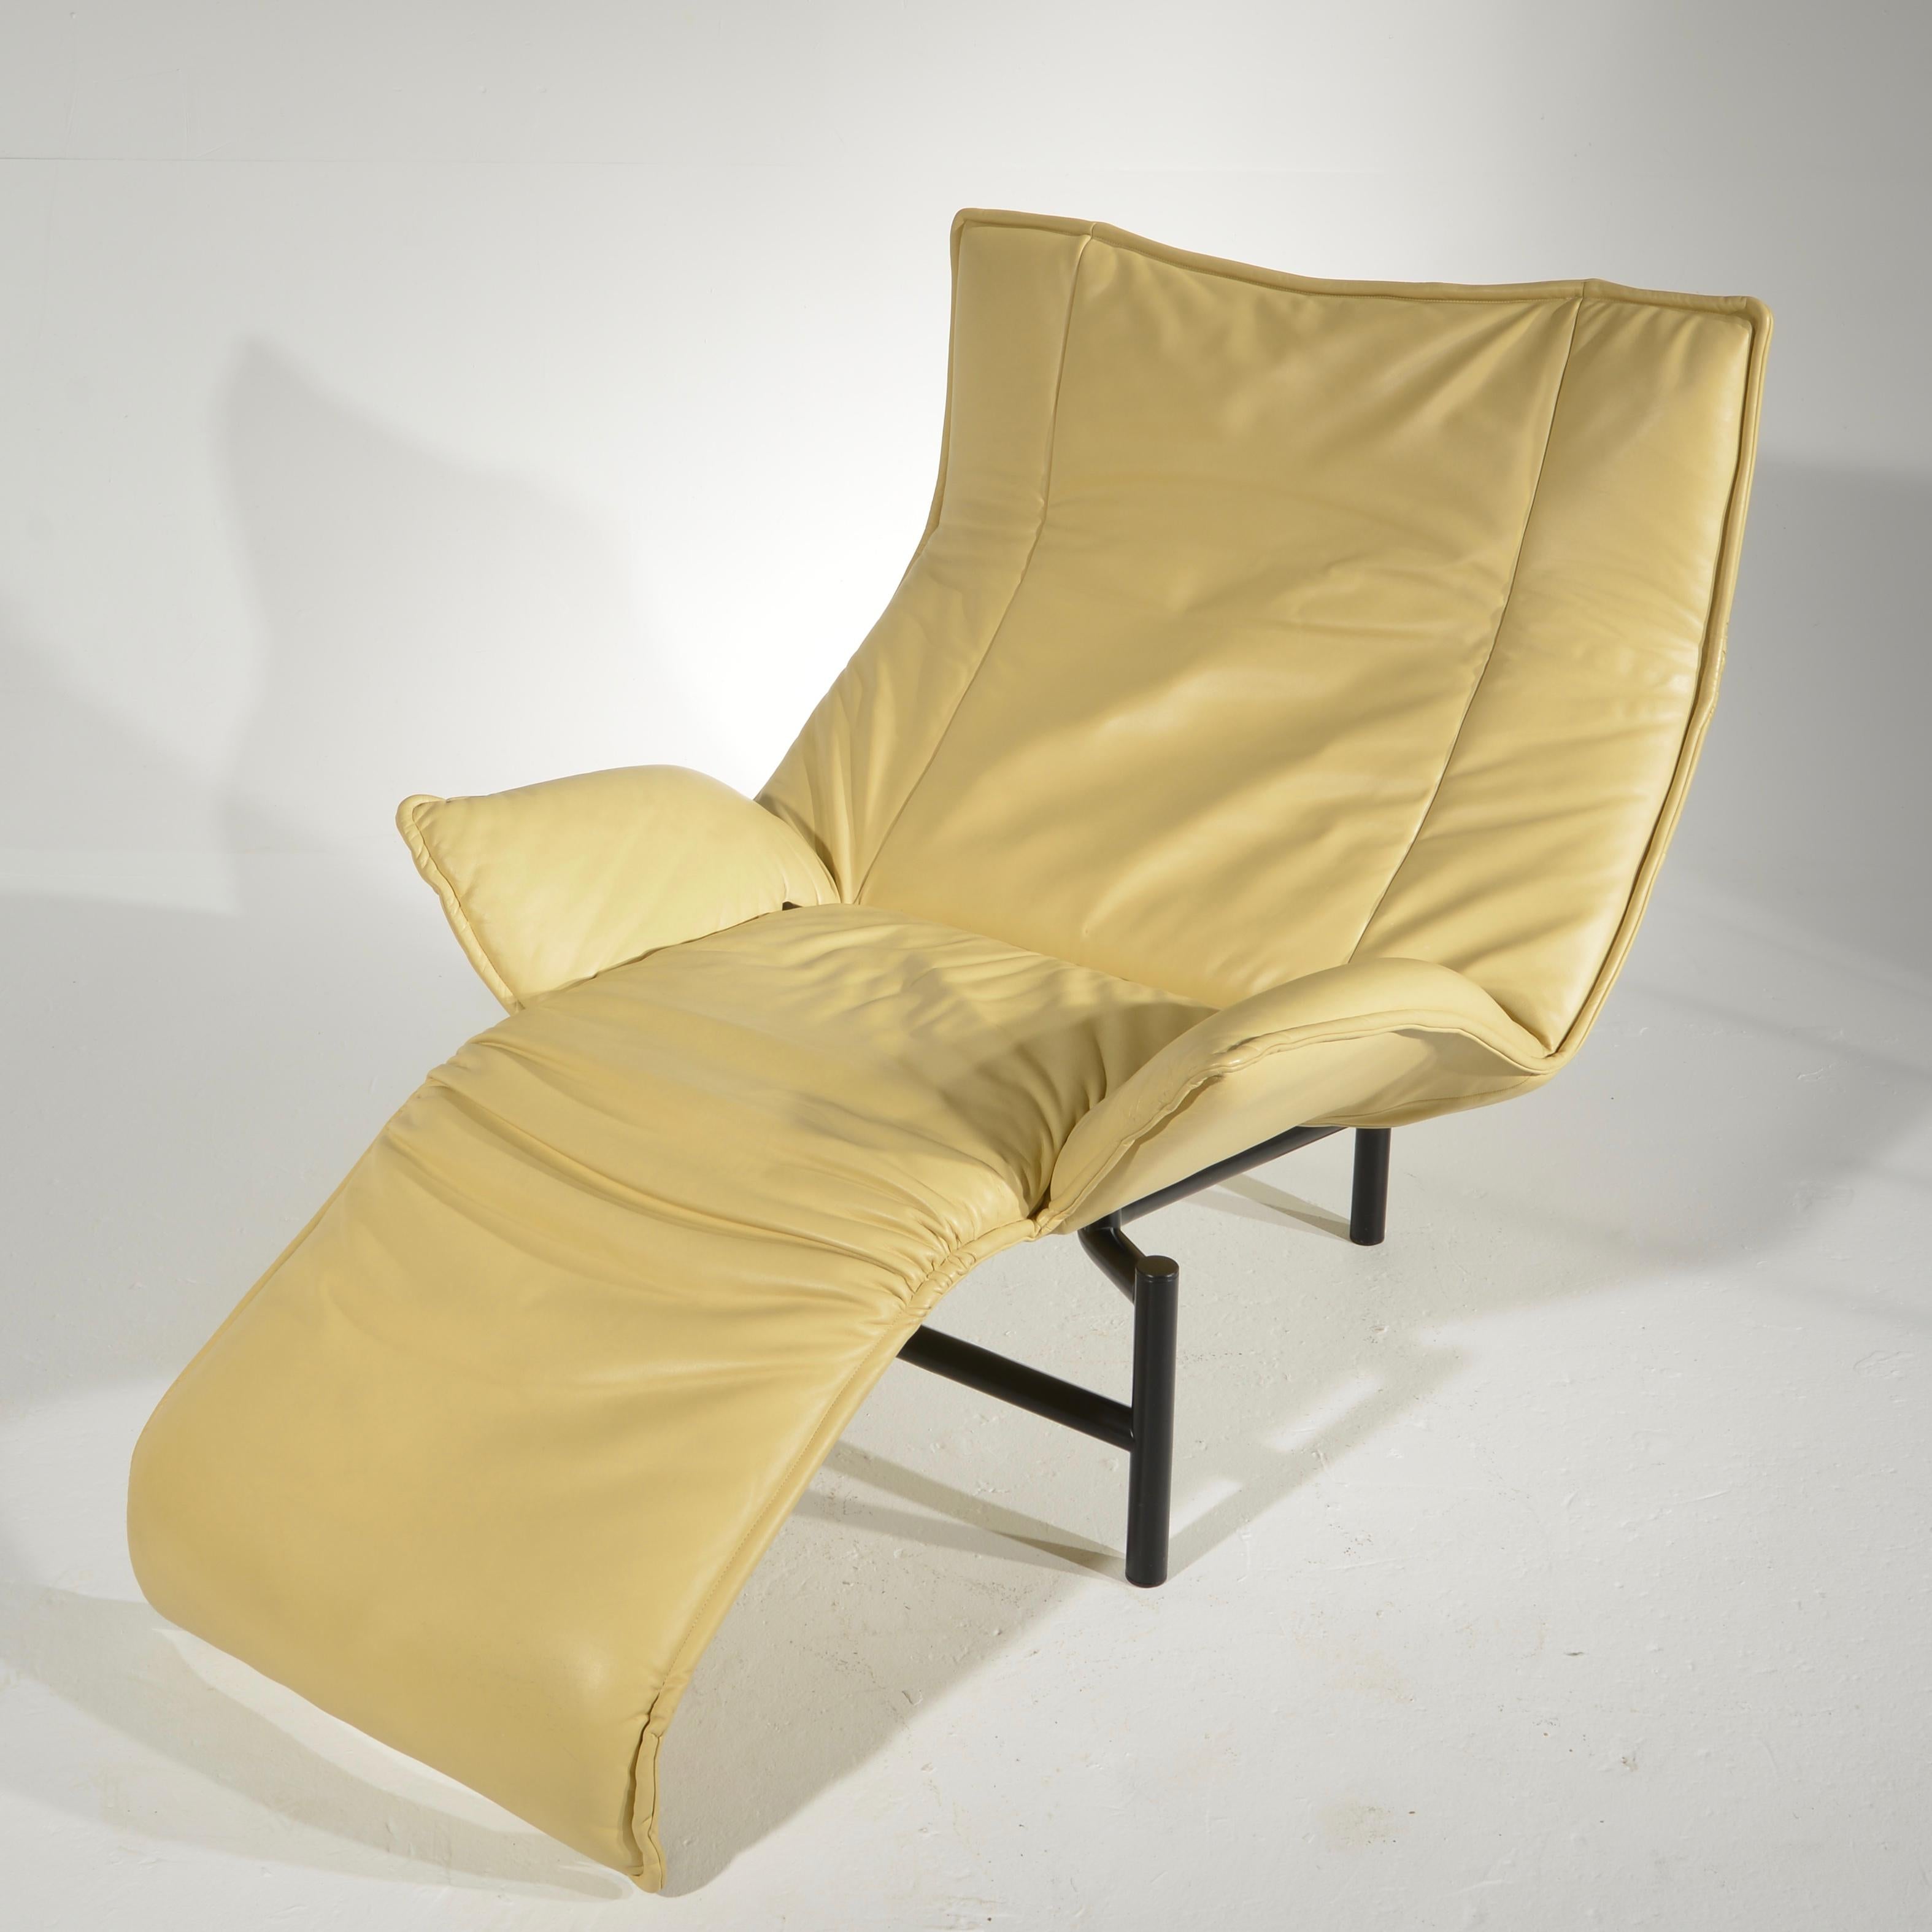 Veranda Lounge Chair by Vico Magistretti for Cassina 3